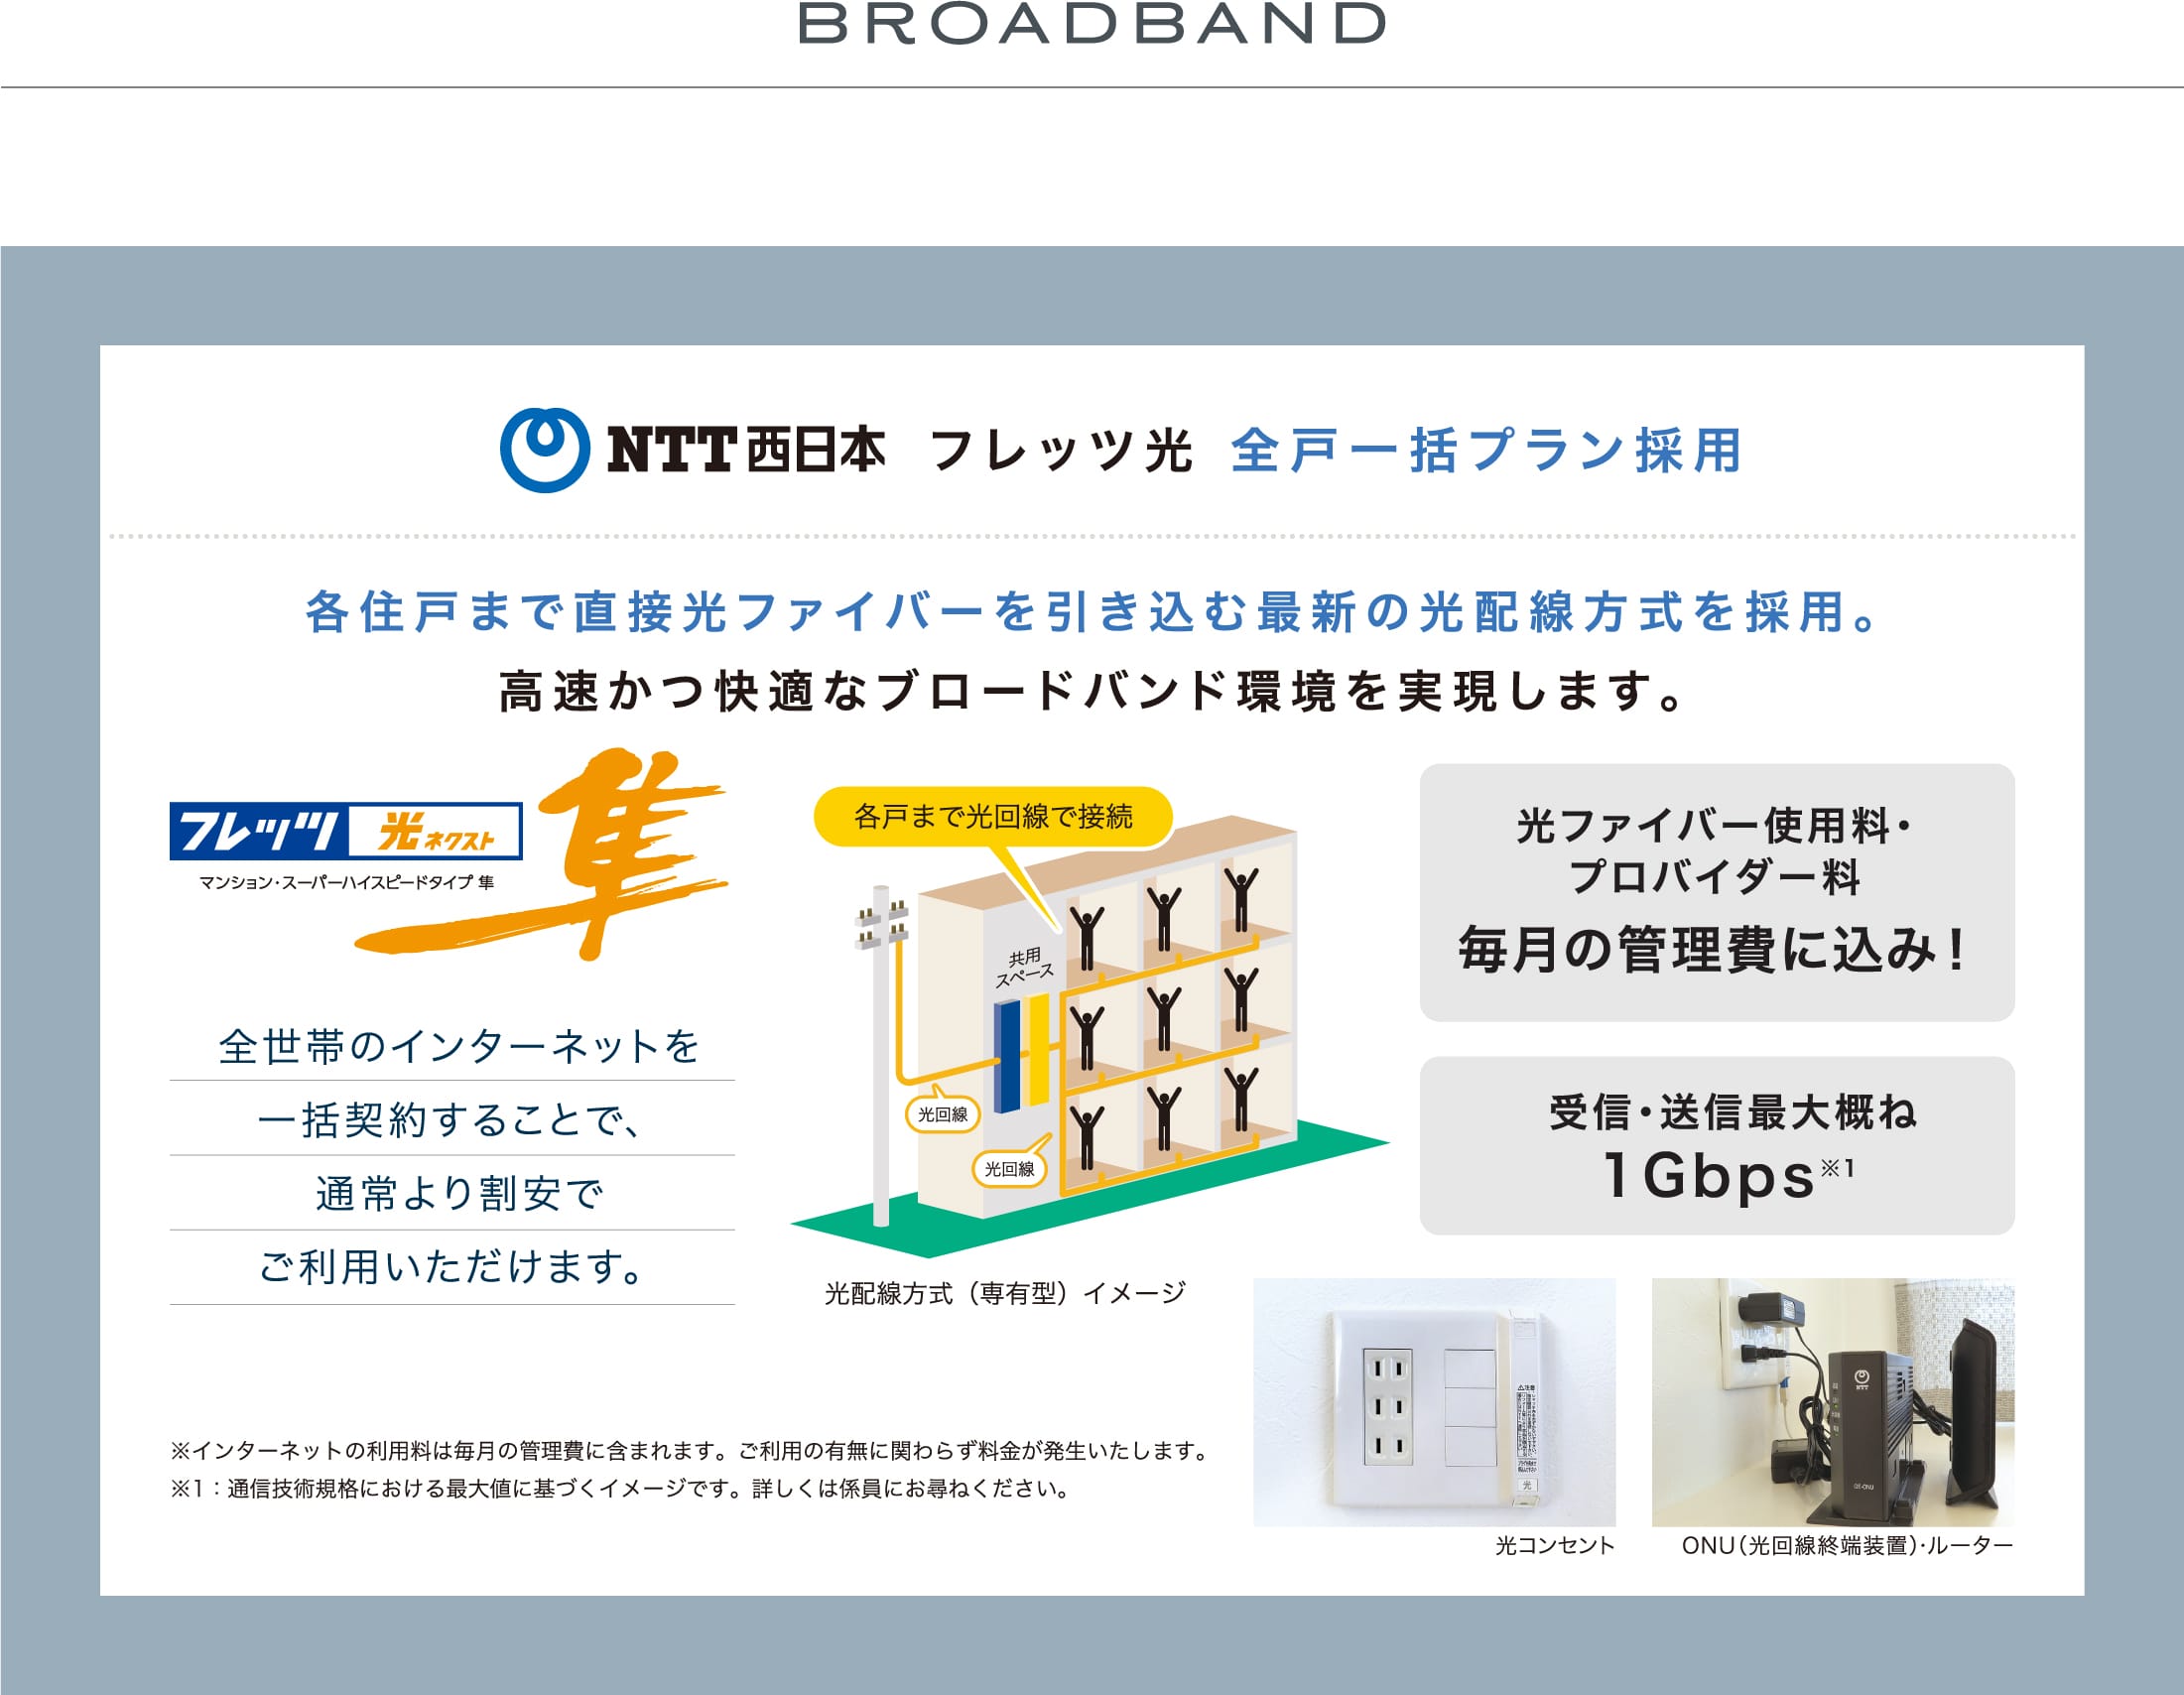 BROADBAND NTT西日本 フレッツ光 全戸一括プラン採用 各住戸まで直接光ファイバーを引き込む最新の光配線方式を採用。高速かつ快適なブロードバンド環境を実現します。  全世帯のインターネットを一括契約することで、通常より割安でご利用いただけます。